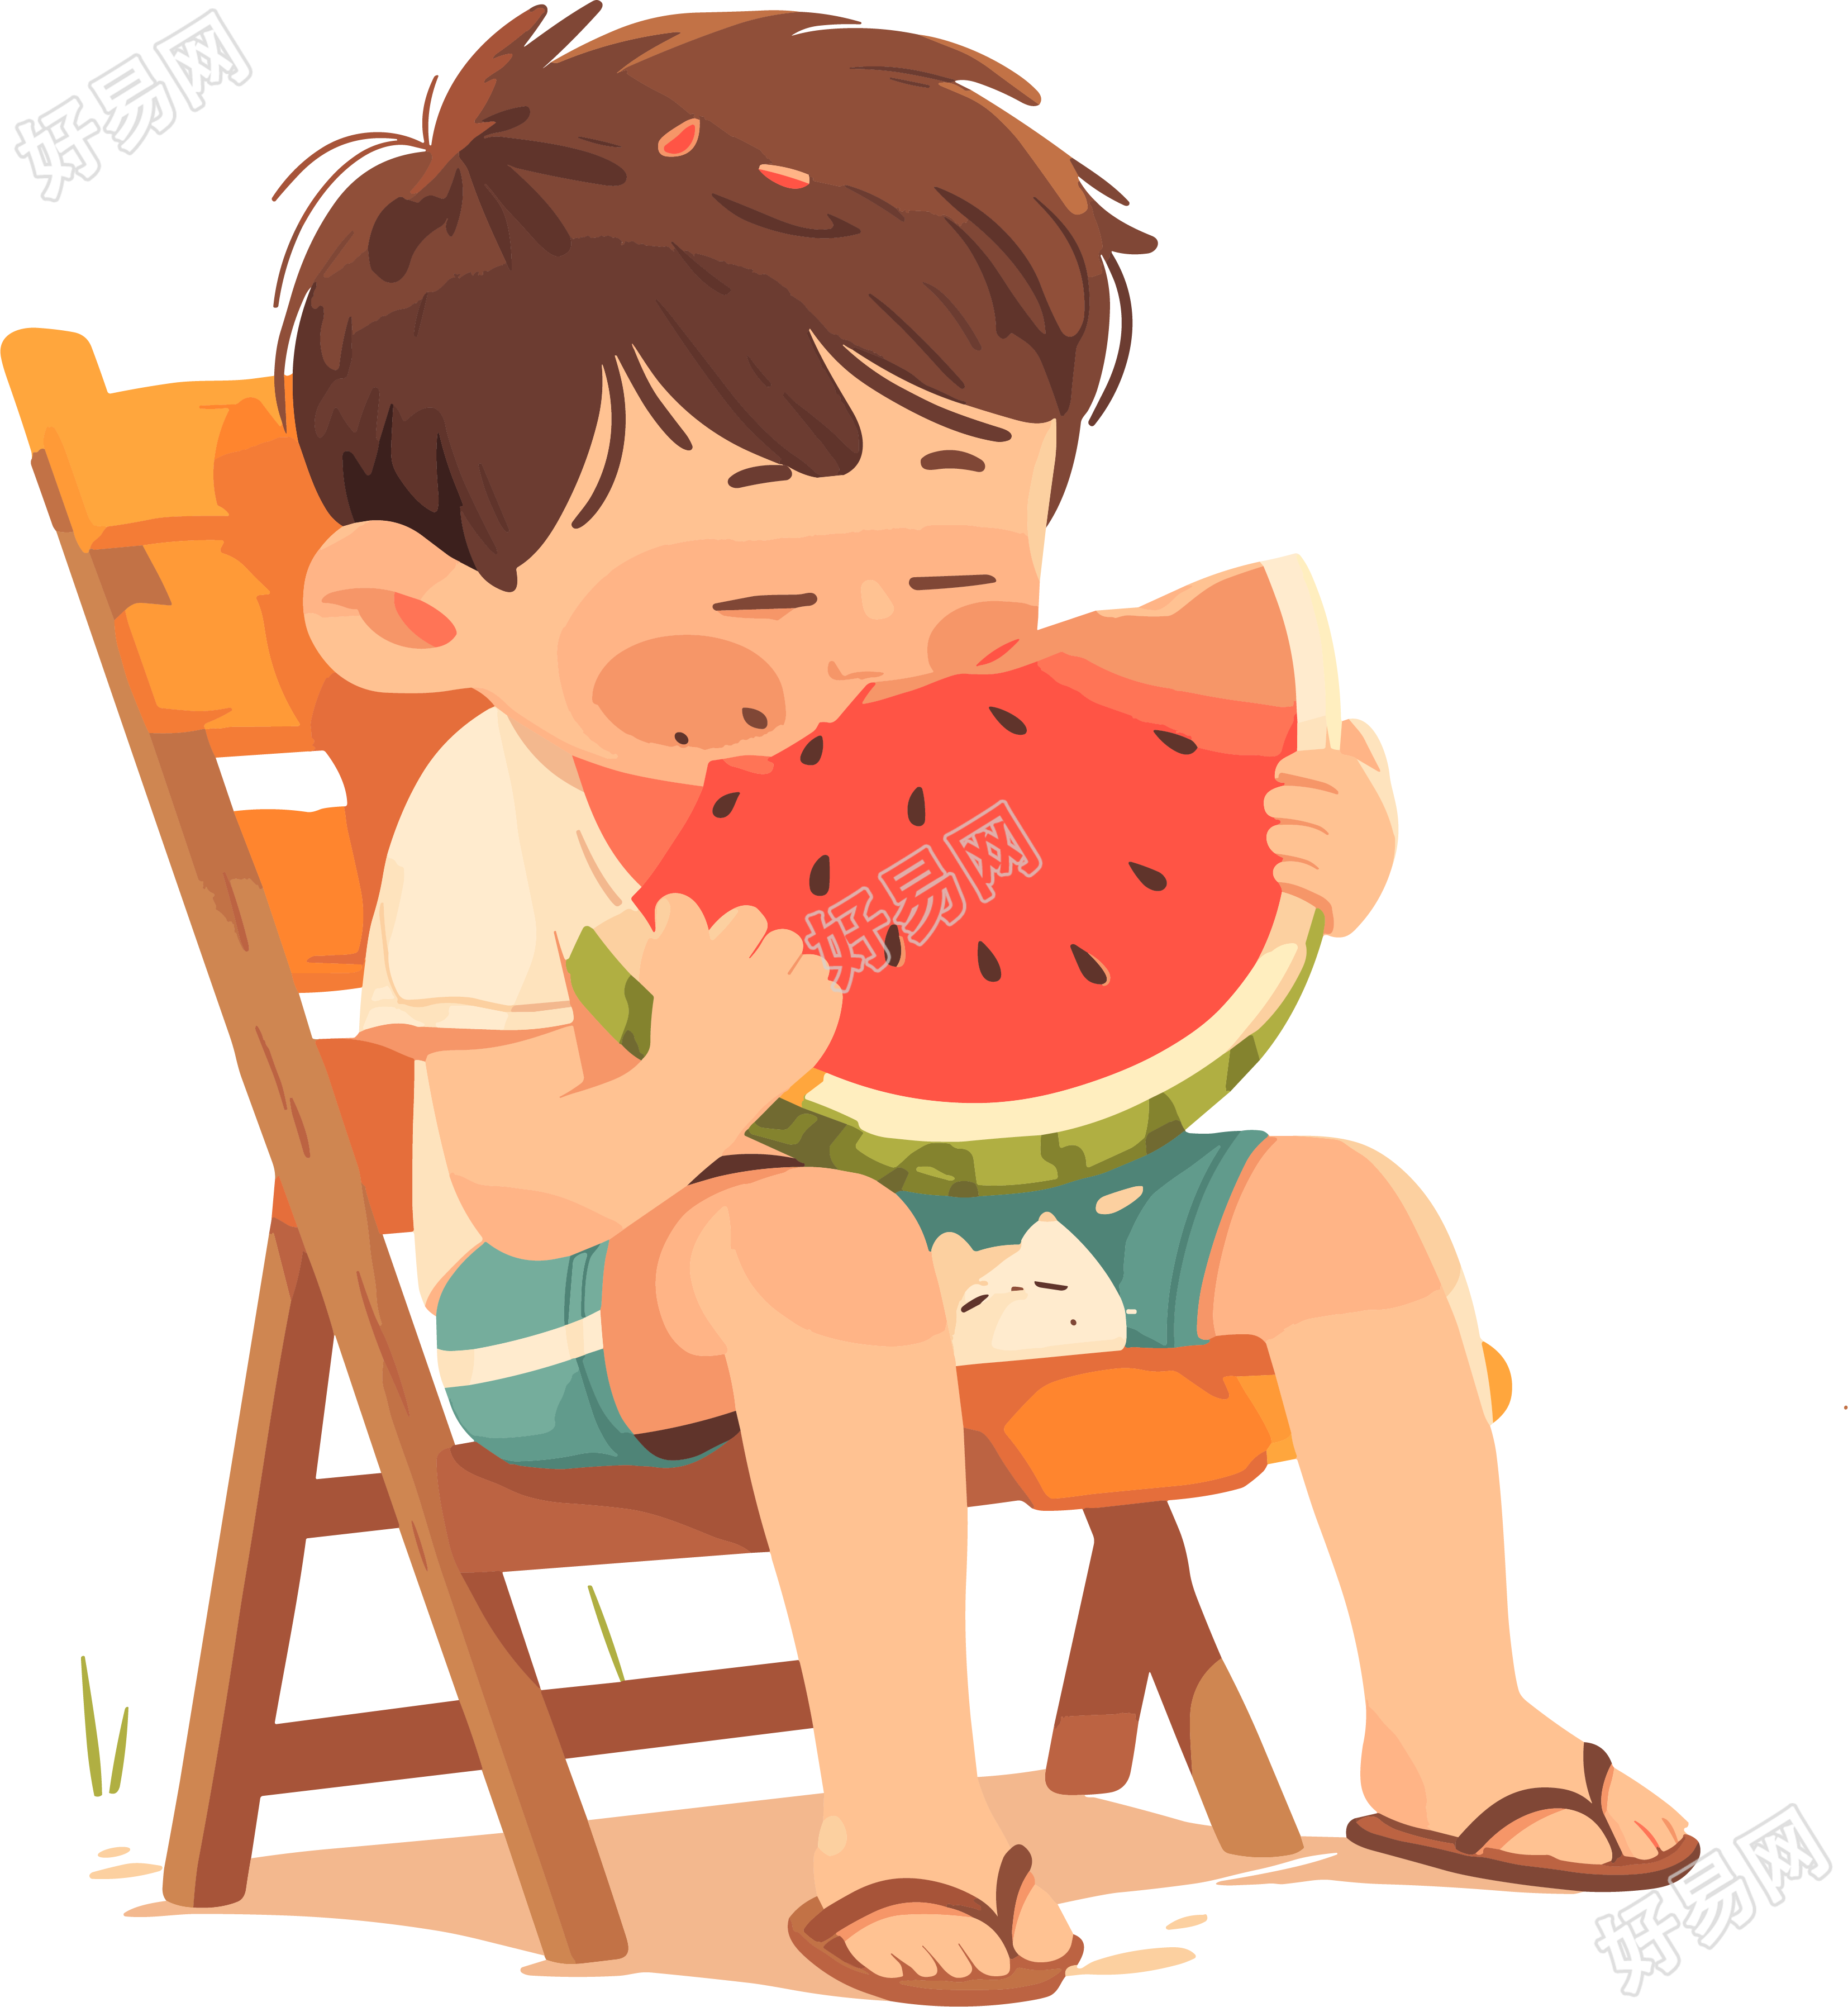 吃西瓜的男孩夏天插画